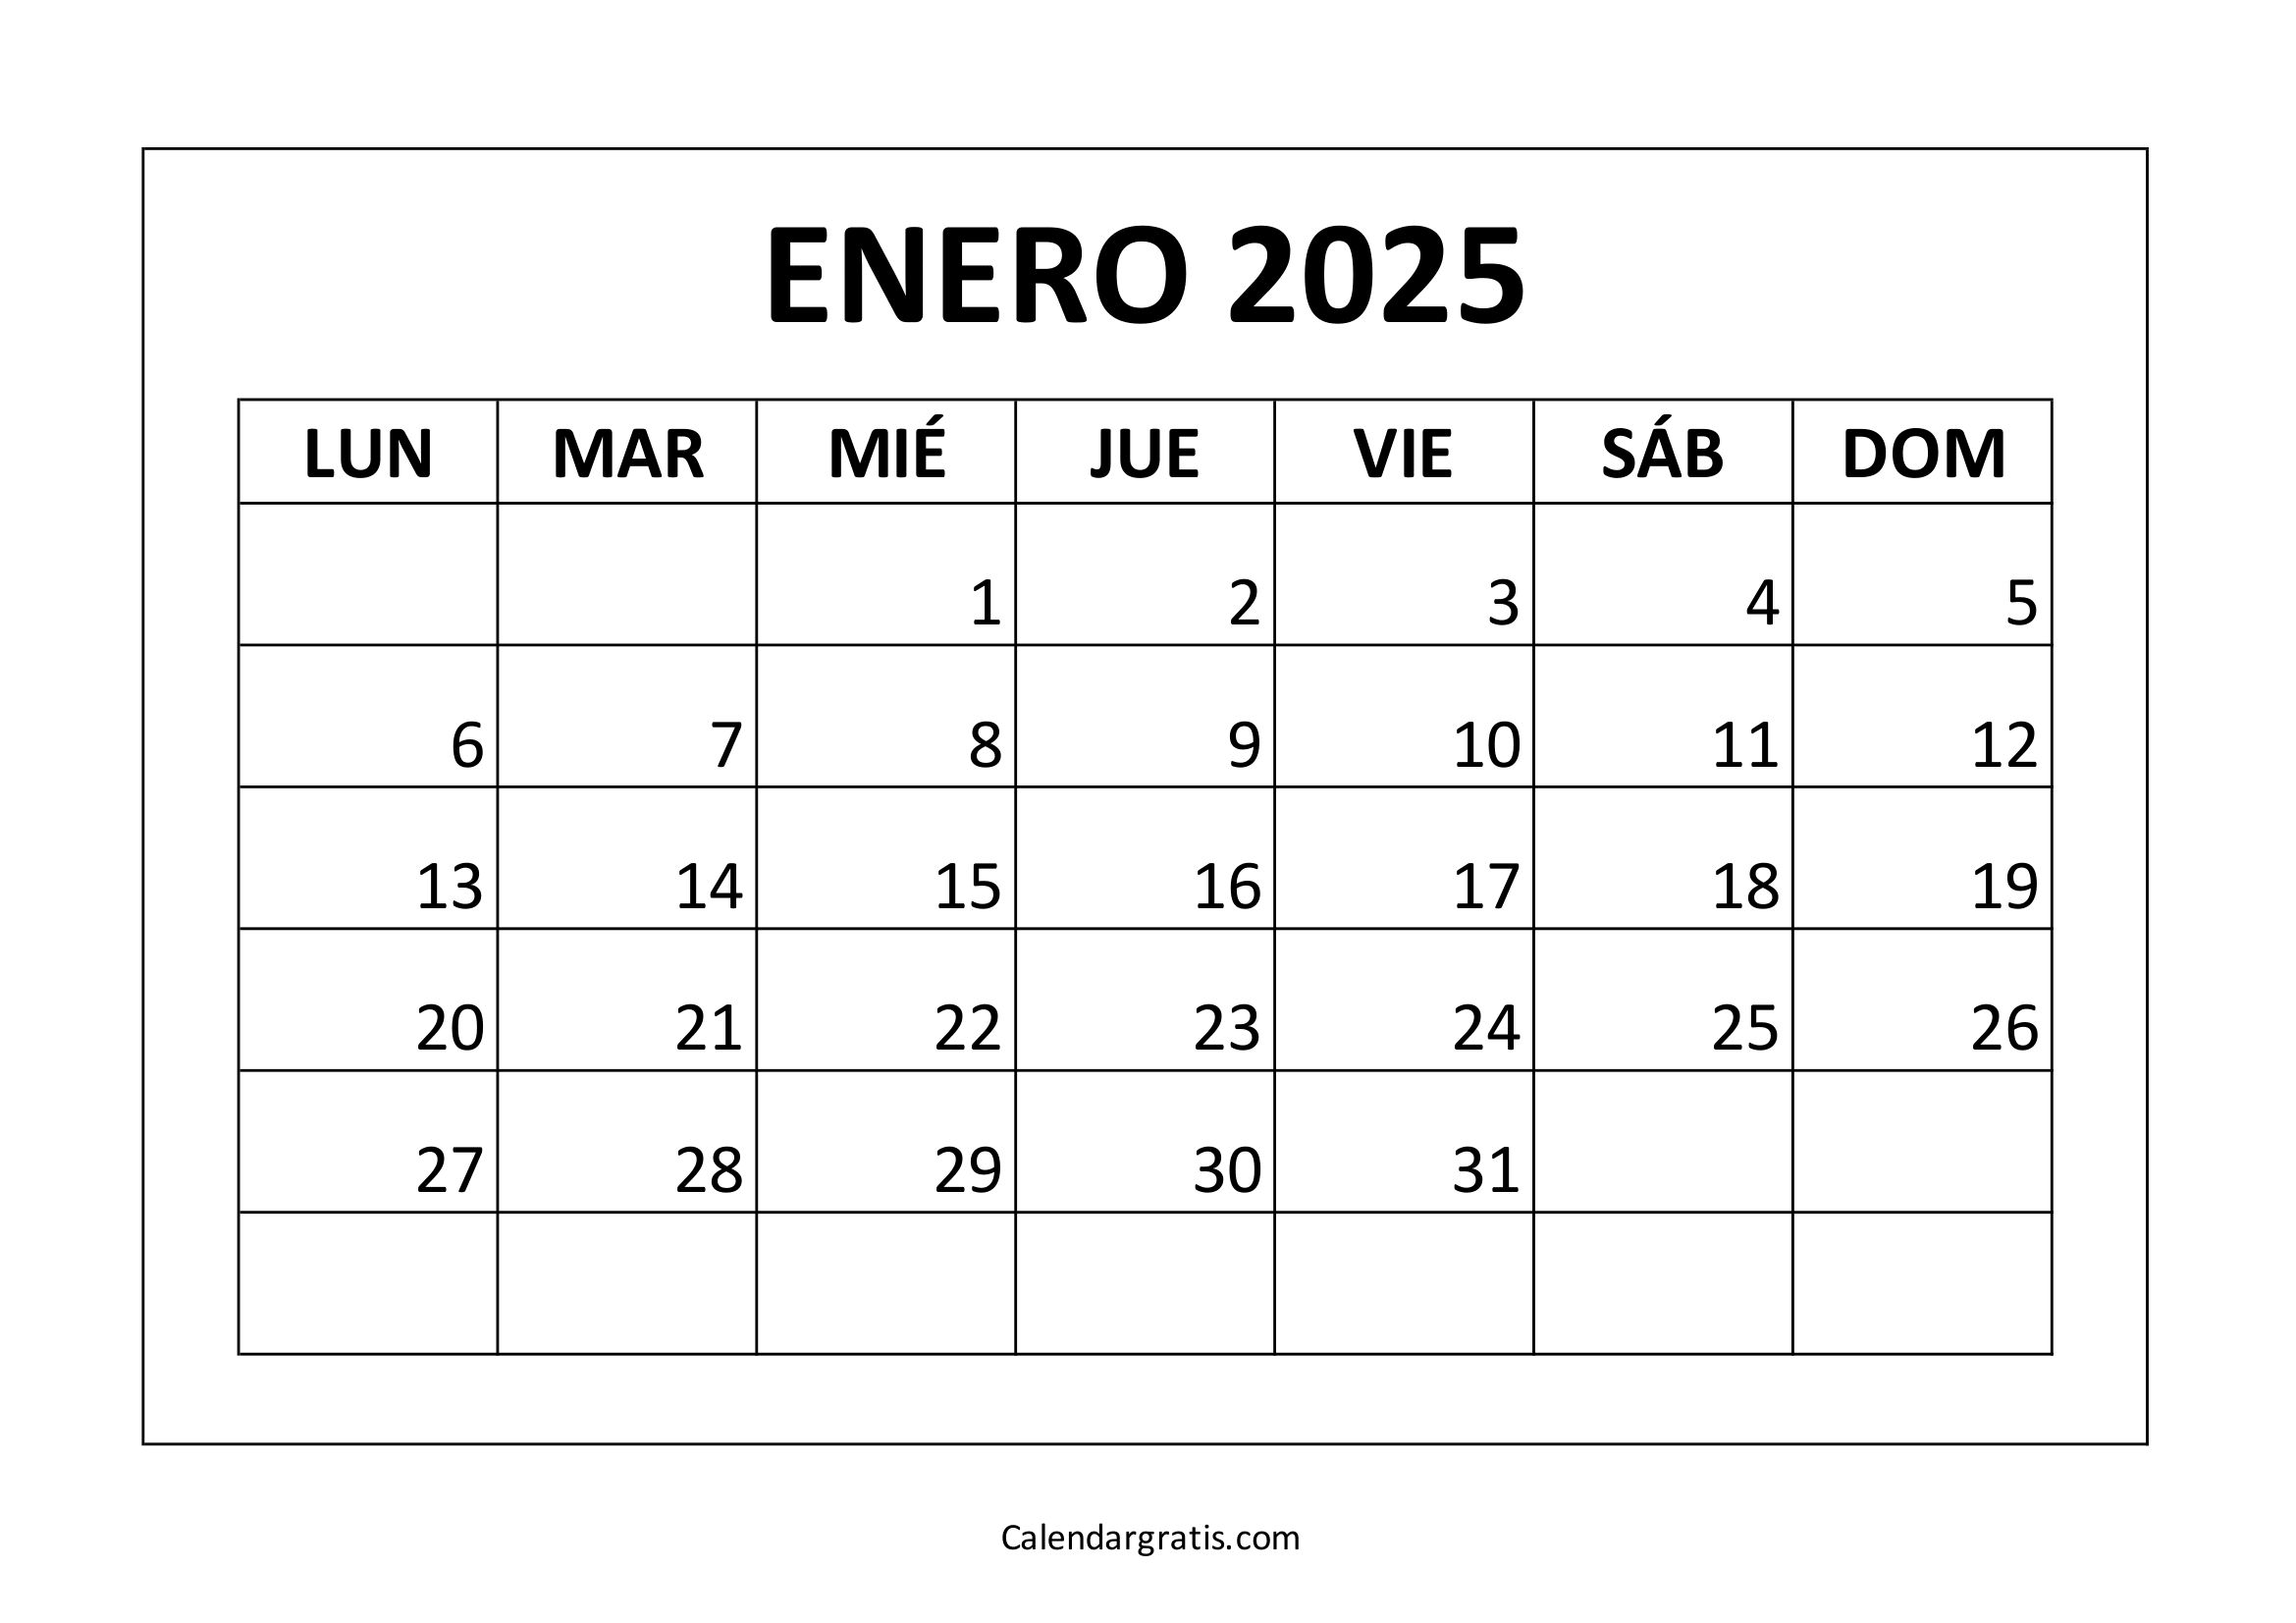 Calendario para imprimir enero 2025